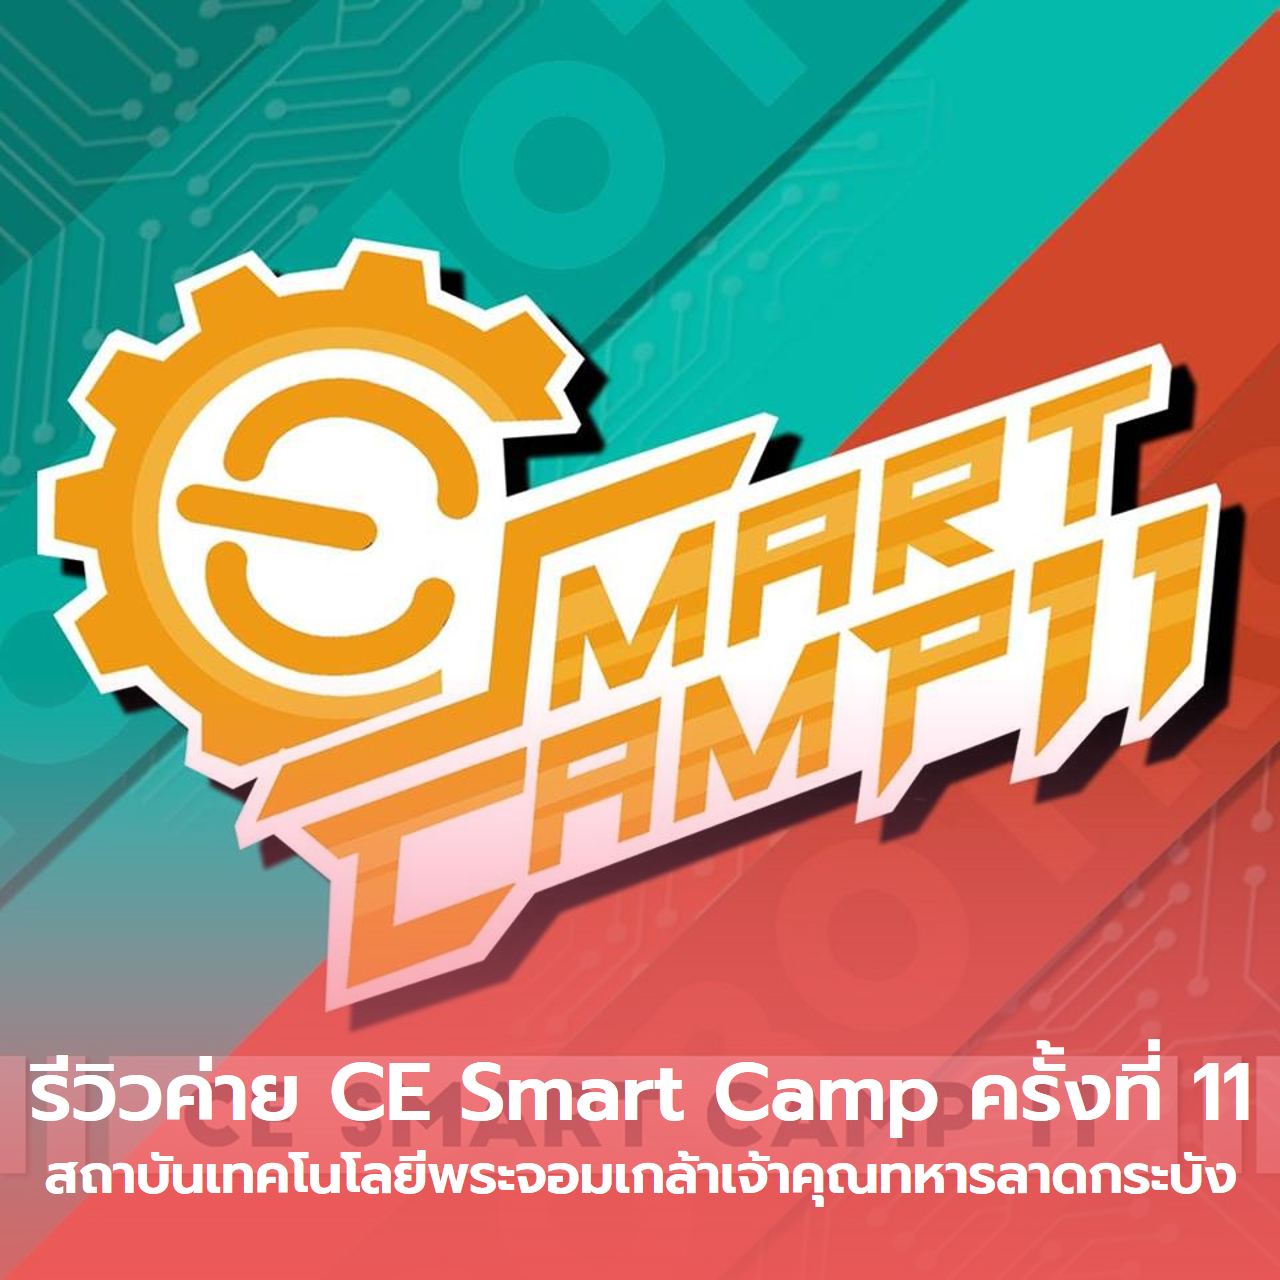  รีวิวค่าย CE Smart Camp ครั้งที่ 11 สจล.